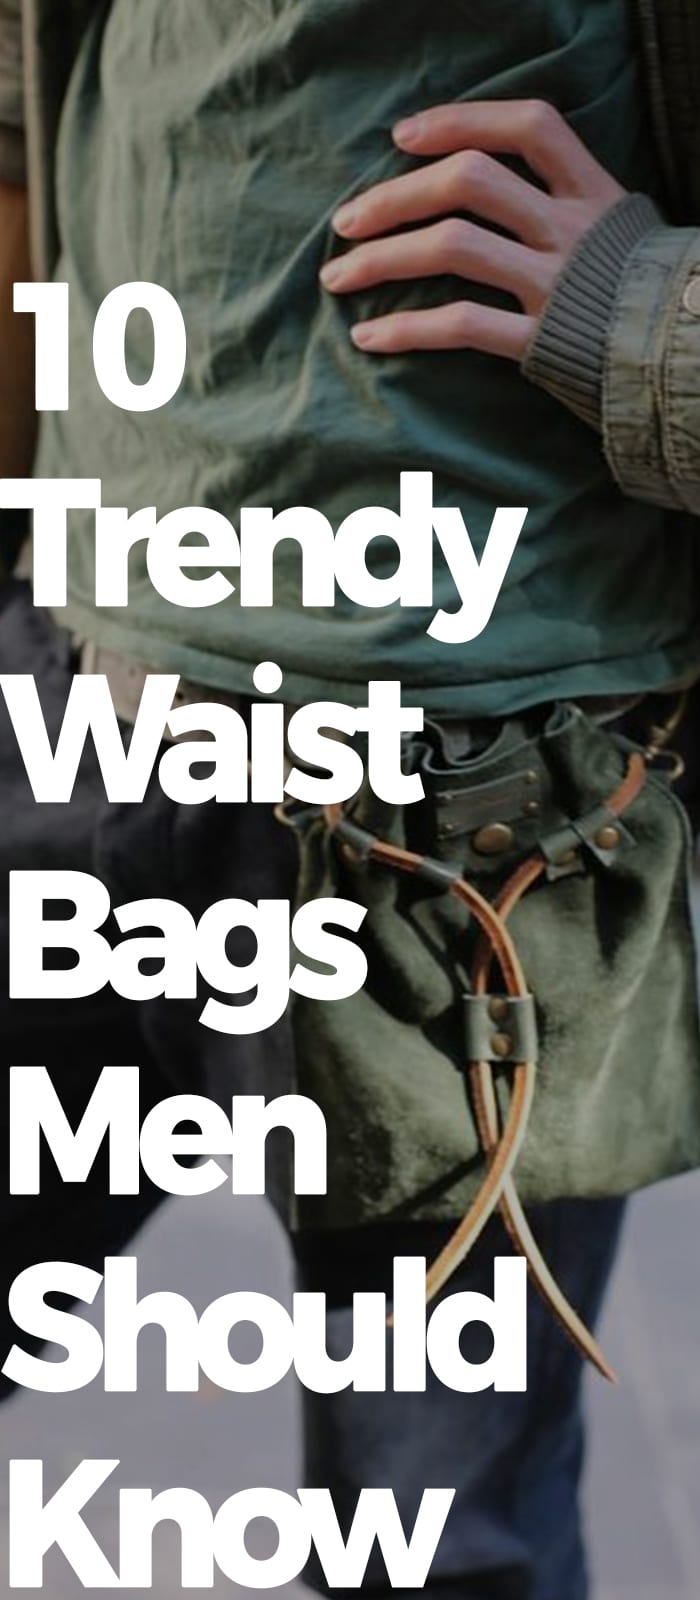 TRENDY WAIST BAGS MEN SHOULD KNOW